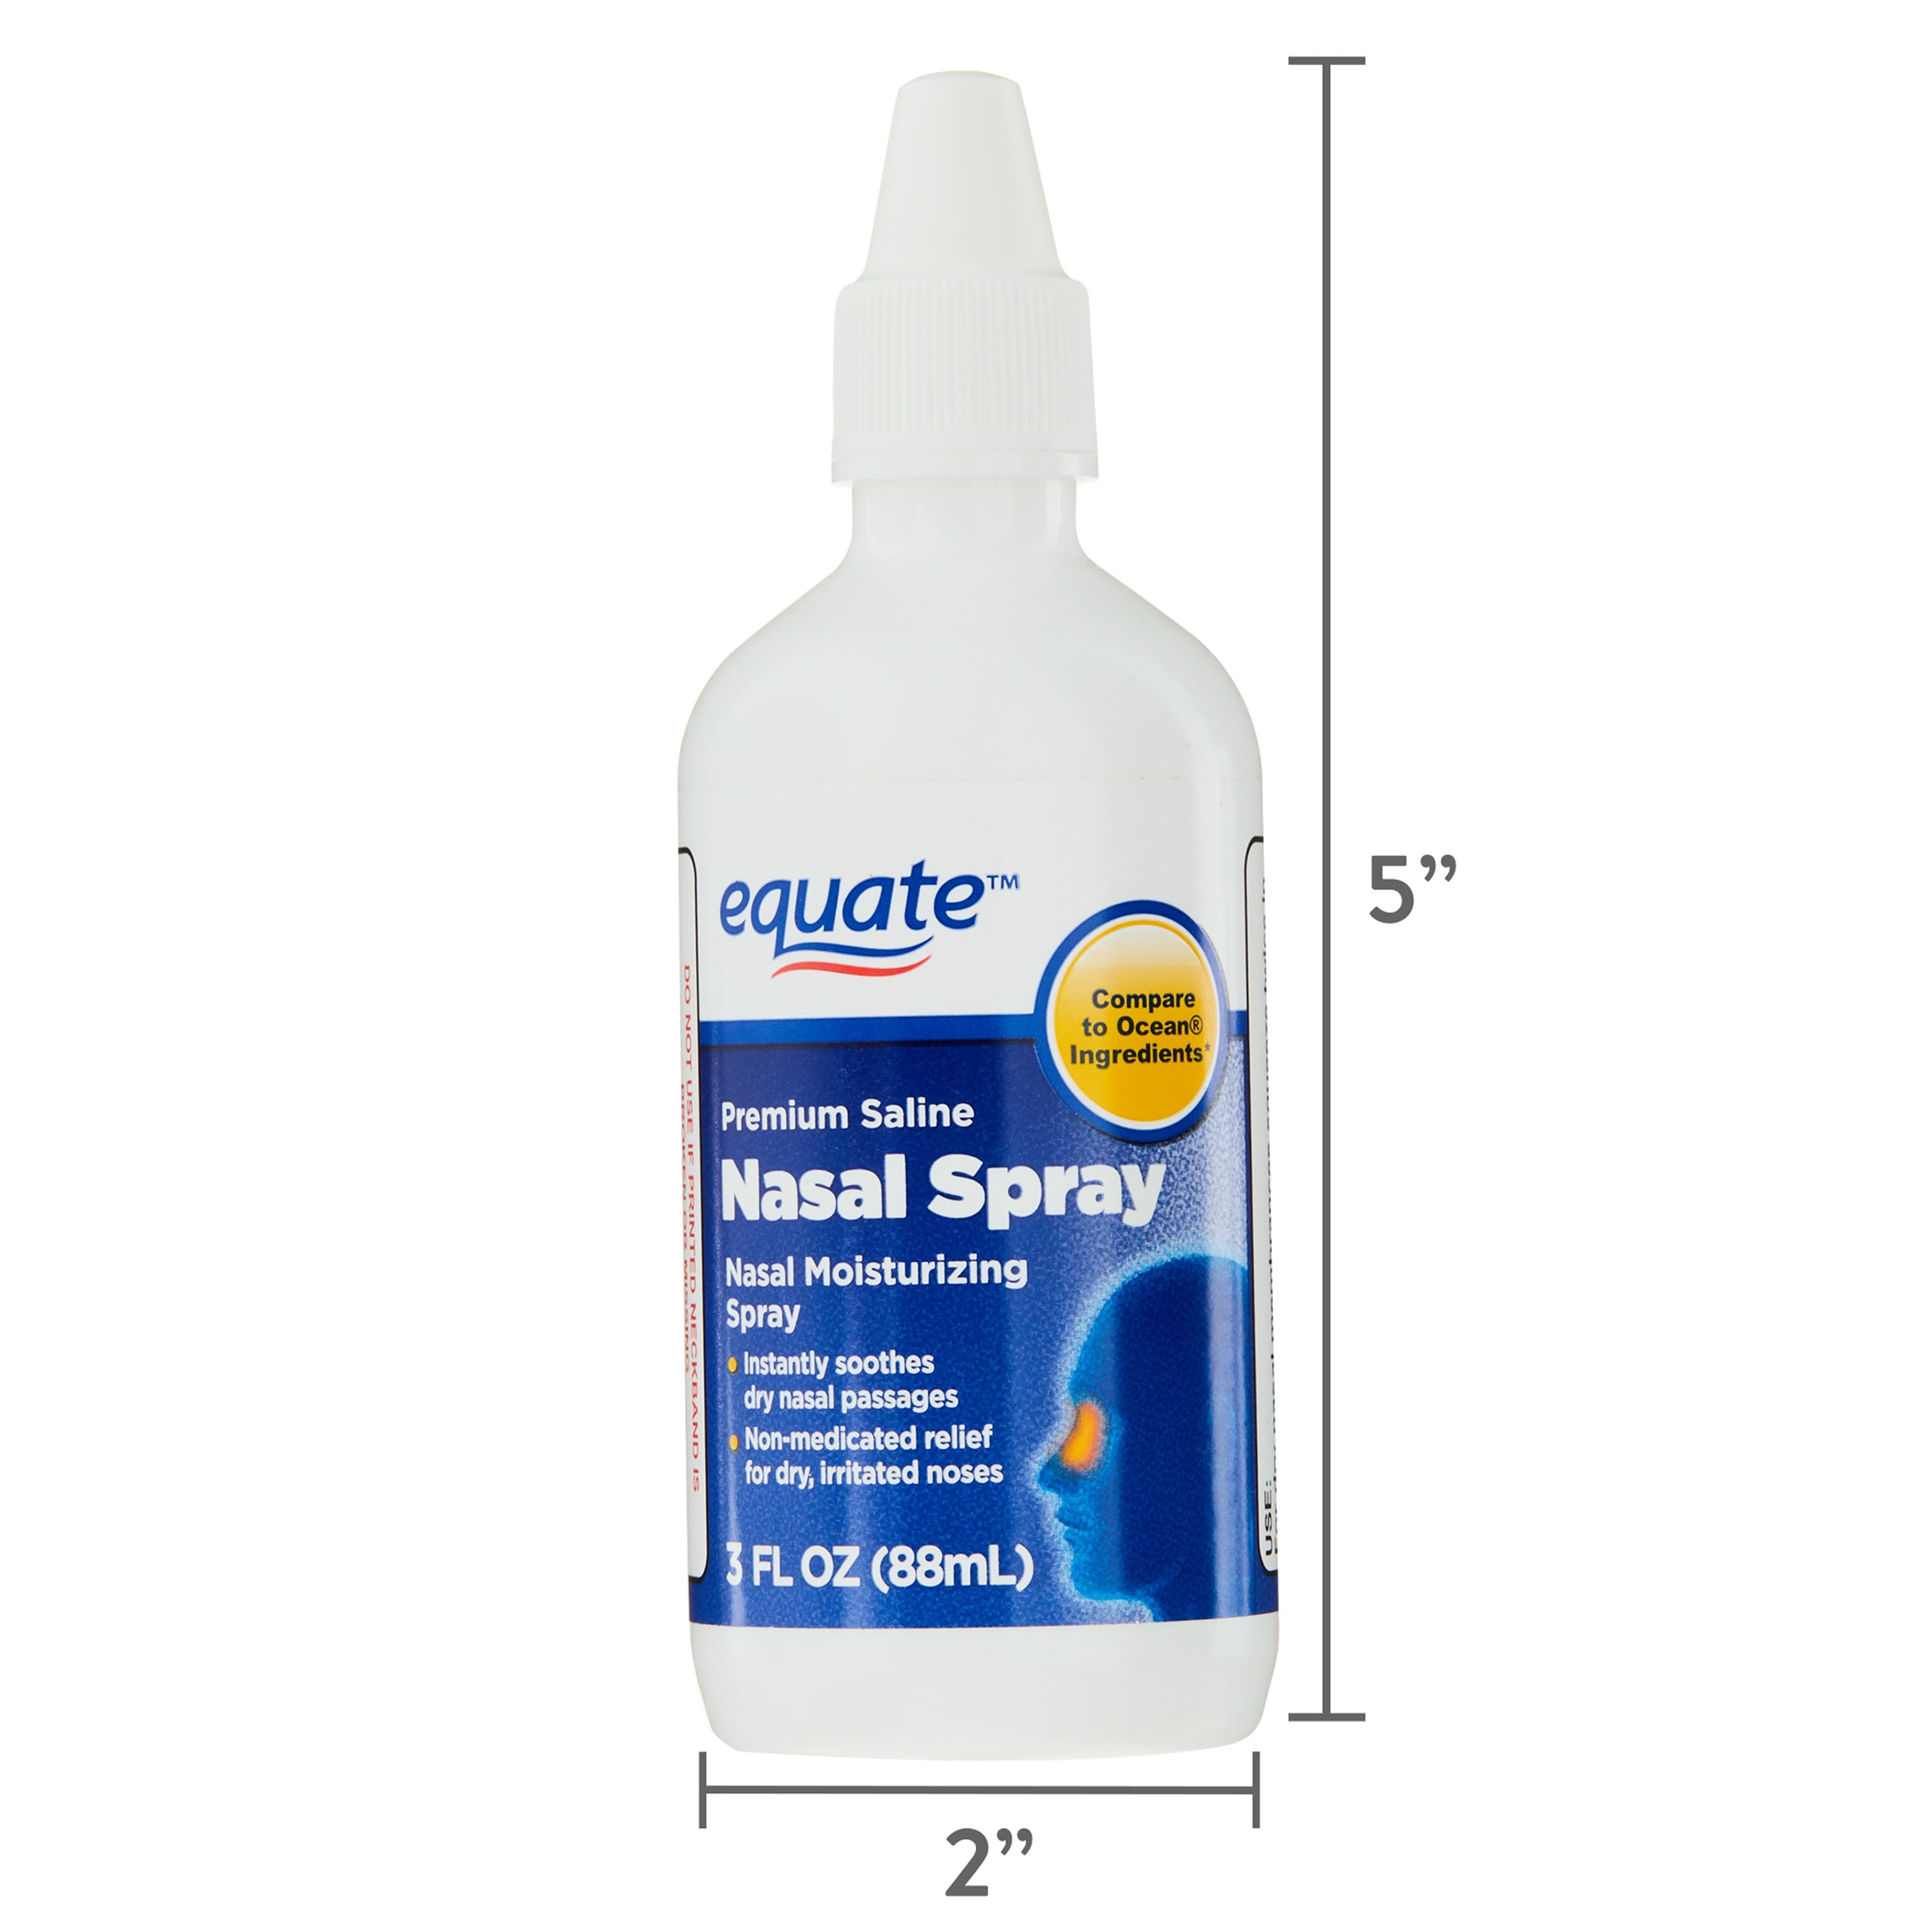 Cercanamente Favor Descomponer Equate Nasal Spray Saline Liquid Mist, Congestion Relief, 3 fl oz -  Walmart.com